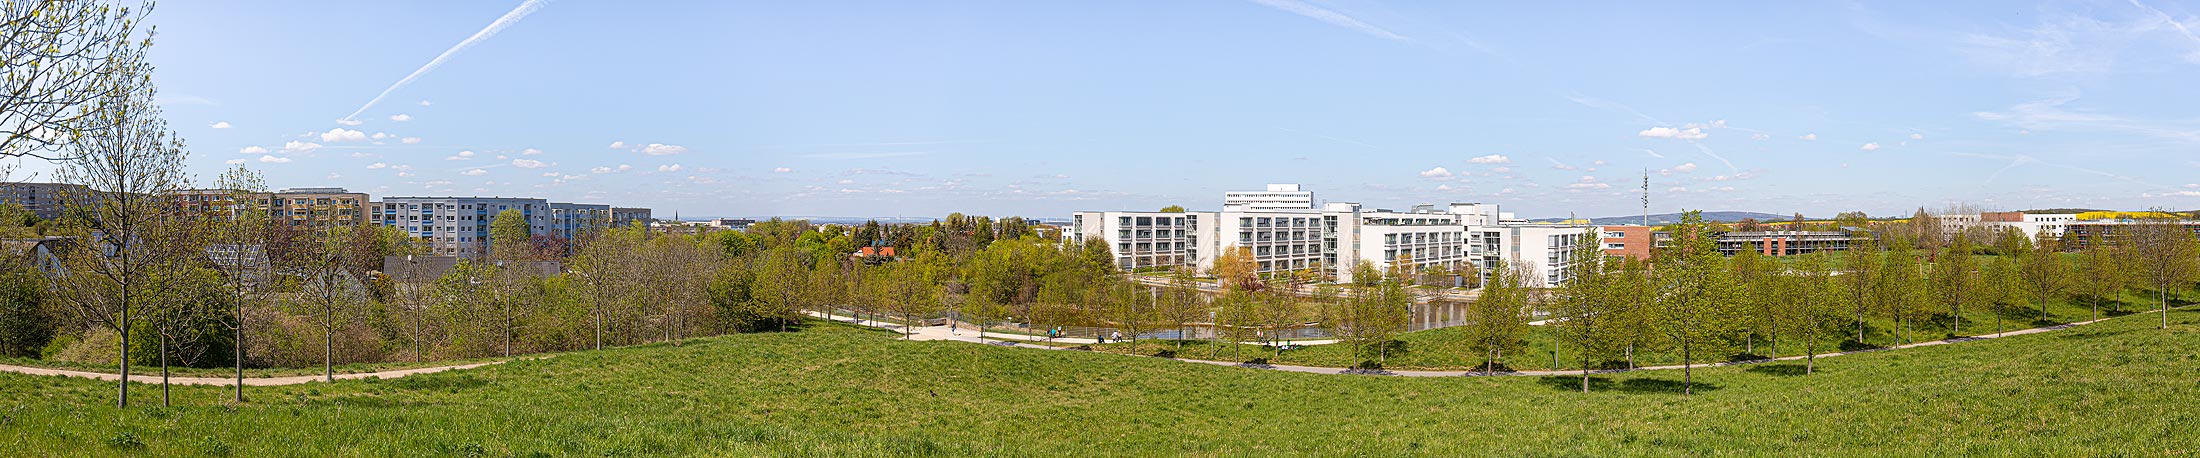 Panoramablick auf das Klinikum in Melchendorf